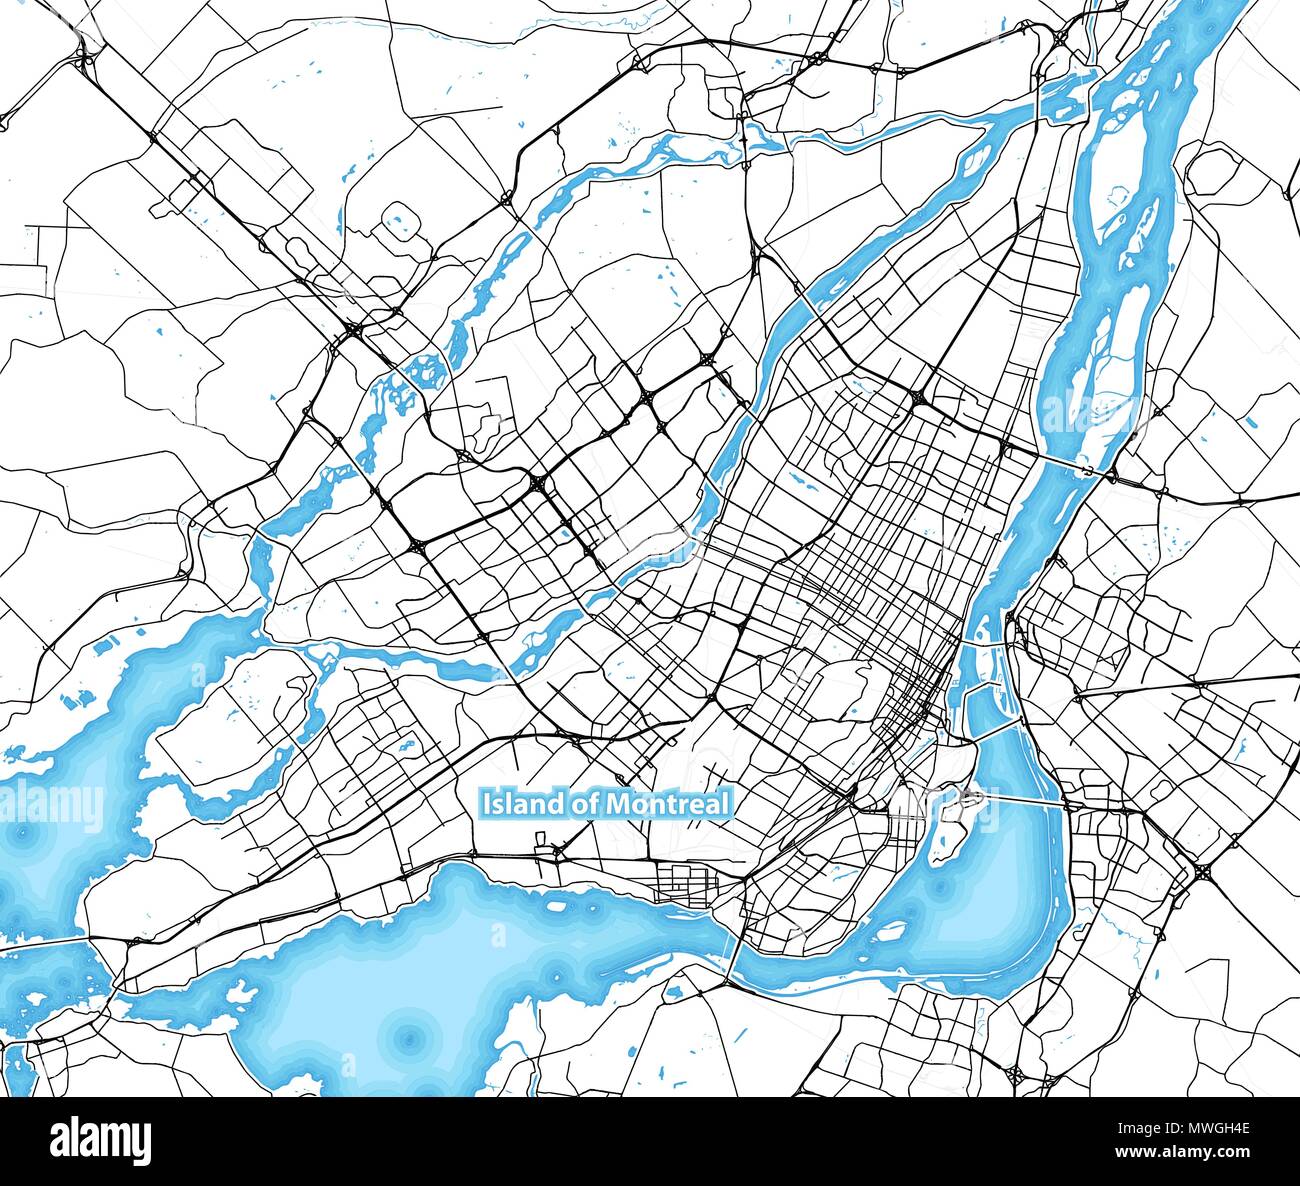 Carte de l'île de Montréal, Canada avec la plus grande des autoroutes, des routes et les îles et d'îlots Illustration de Vecteur